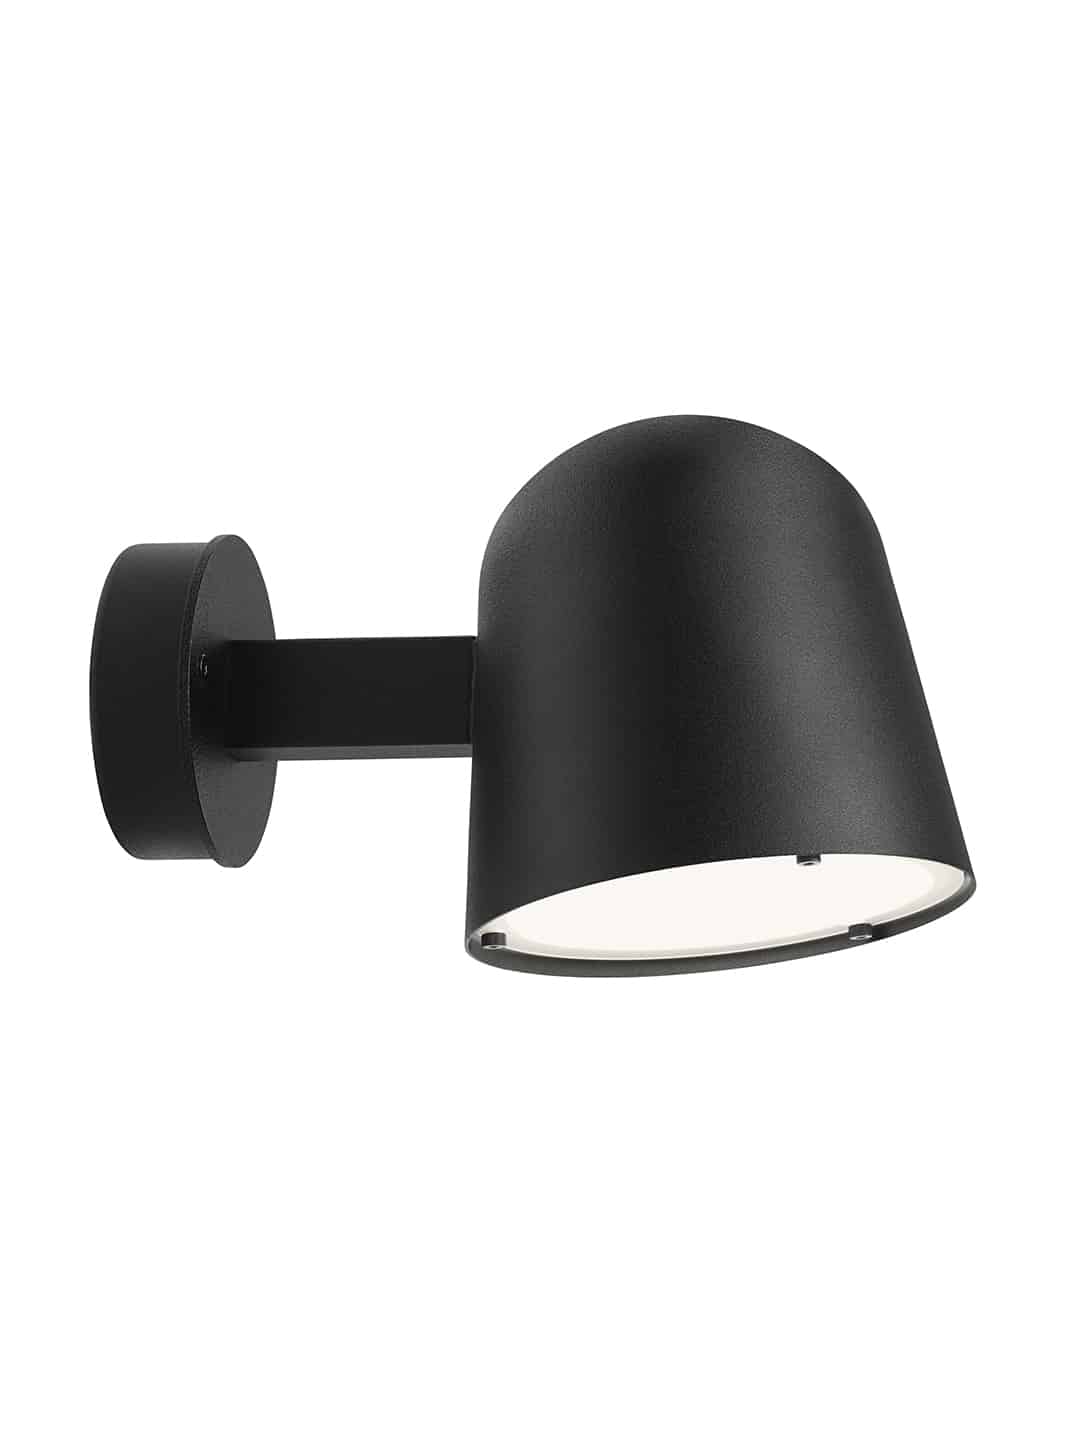 Красивый уличный светильник Zero Lighting Convex Wall Coastline черного цвета